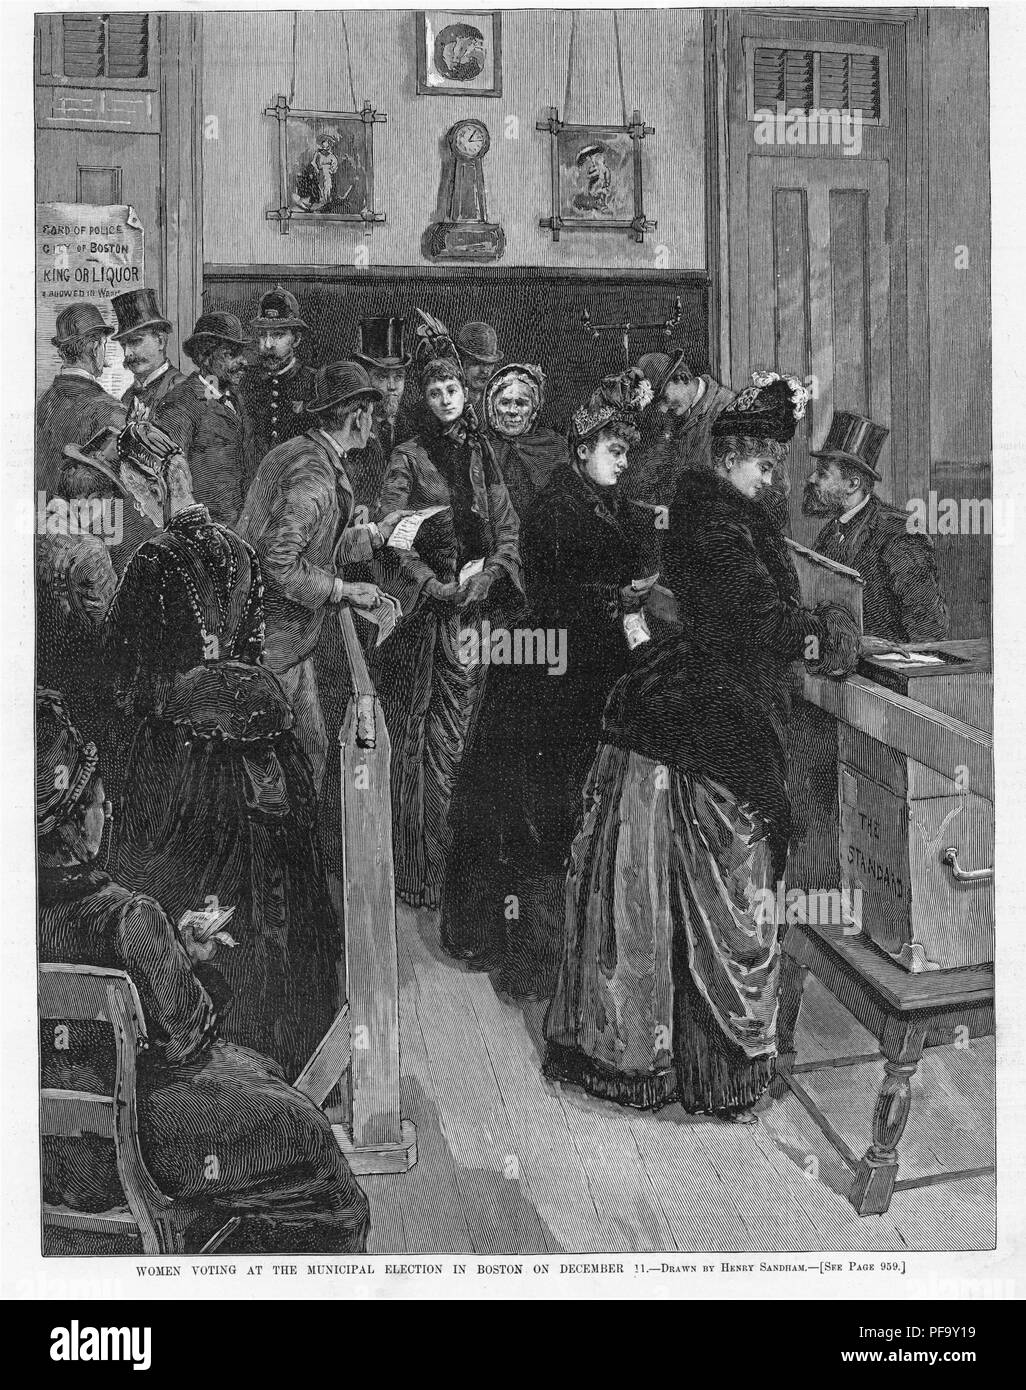 Schwarz-weiß drucken, die Frauen die Teilnahme an Boston's 1888 School board Wahlen, mit Untertiteln "Frauen stimmen bei der Kommunalwahl in Boston am 11. Dezember", illustriert von Henry Sandham und von Harper's Weekly veröffentlicht für den amerikanischen Markt, 1888. () Stockfoto